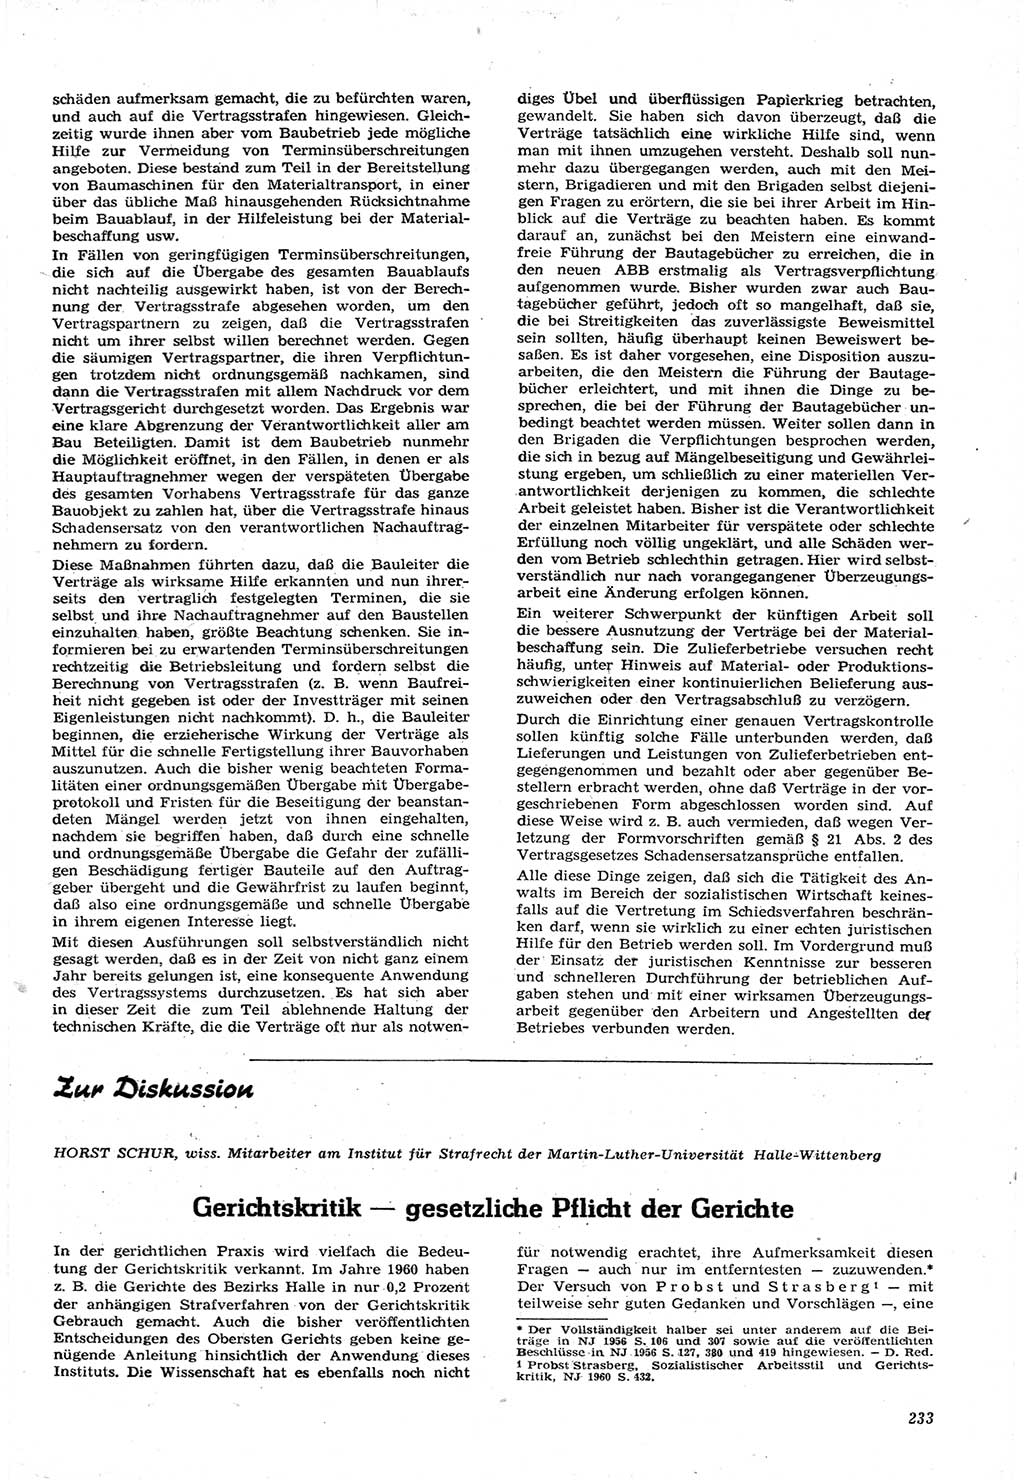 Neue Justiz (NJ), Zeitschrift für Recht und Rechtswissenschaft [Deutsche Demokratische Republik (DDR)], 15. Jahrgang 1961, Seite 233 (NJ DDR 1961, S. 233)